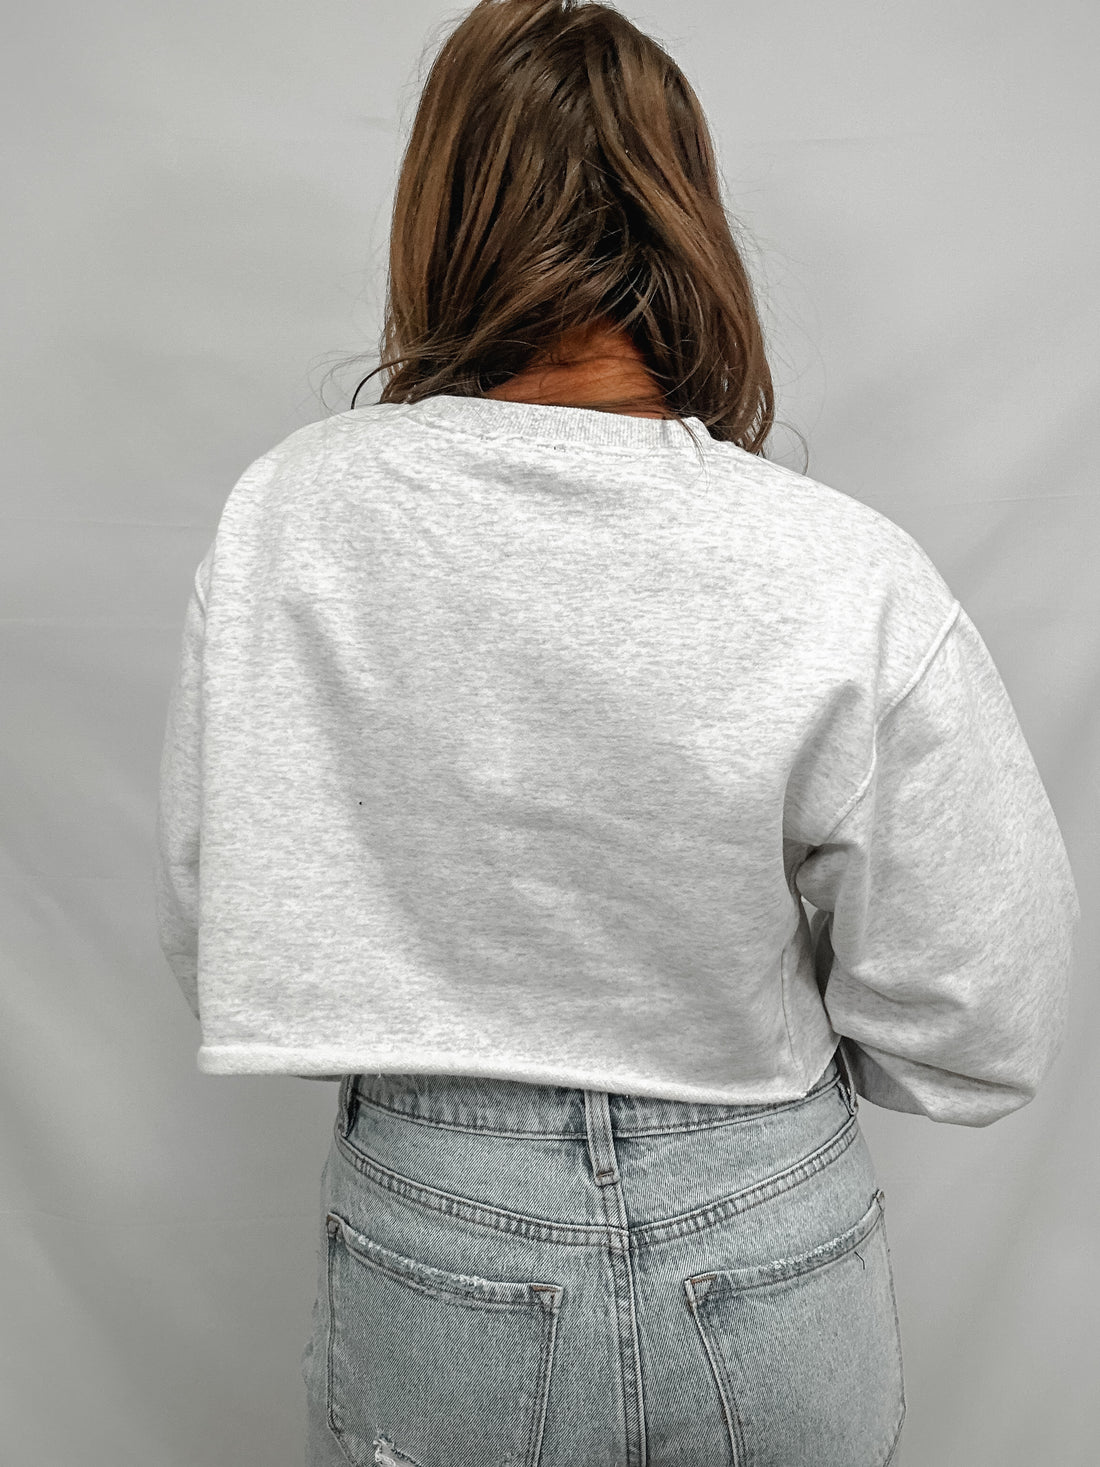 Malibu Cropped Sweatshirt